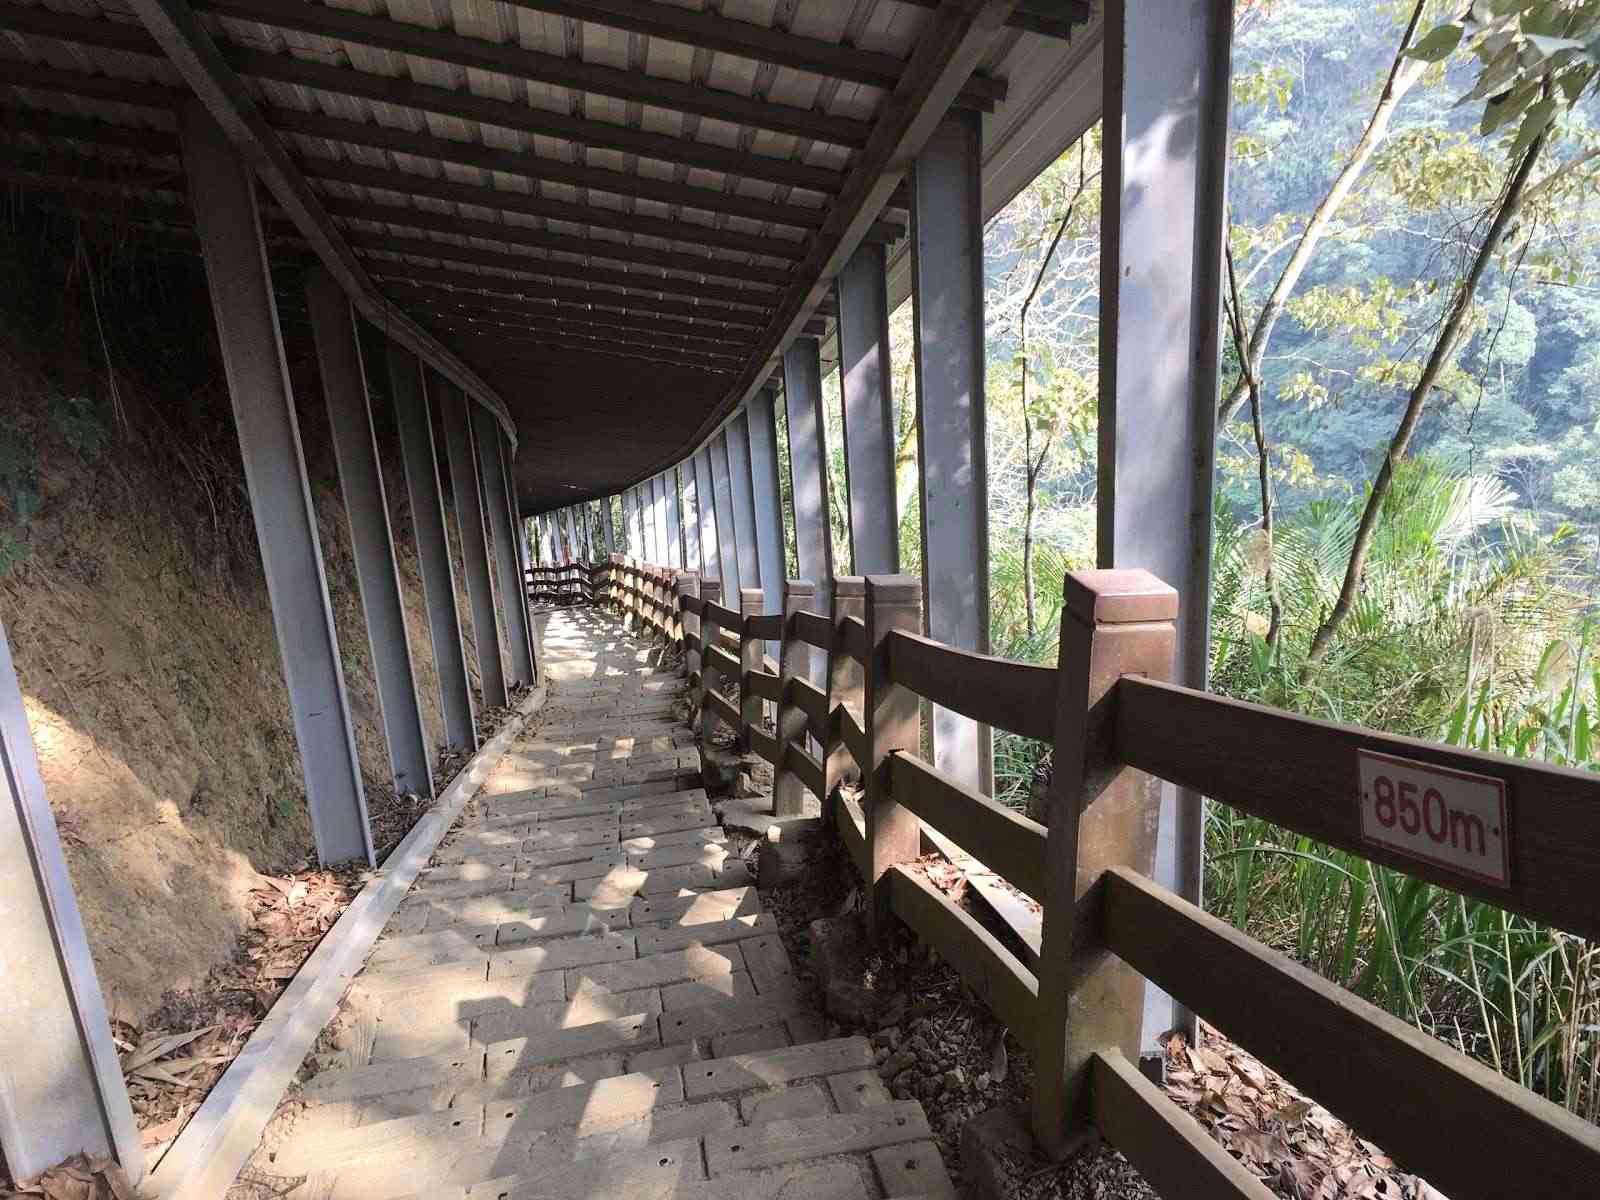 竹山天梯風景區(梯子吊橋)/ 攝影者: 陳慶鴻

(由第三方資訊提供)